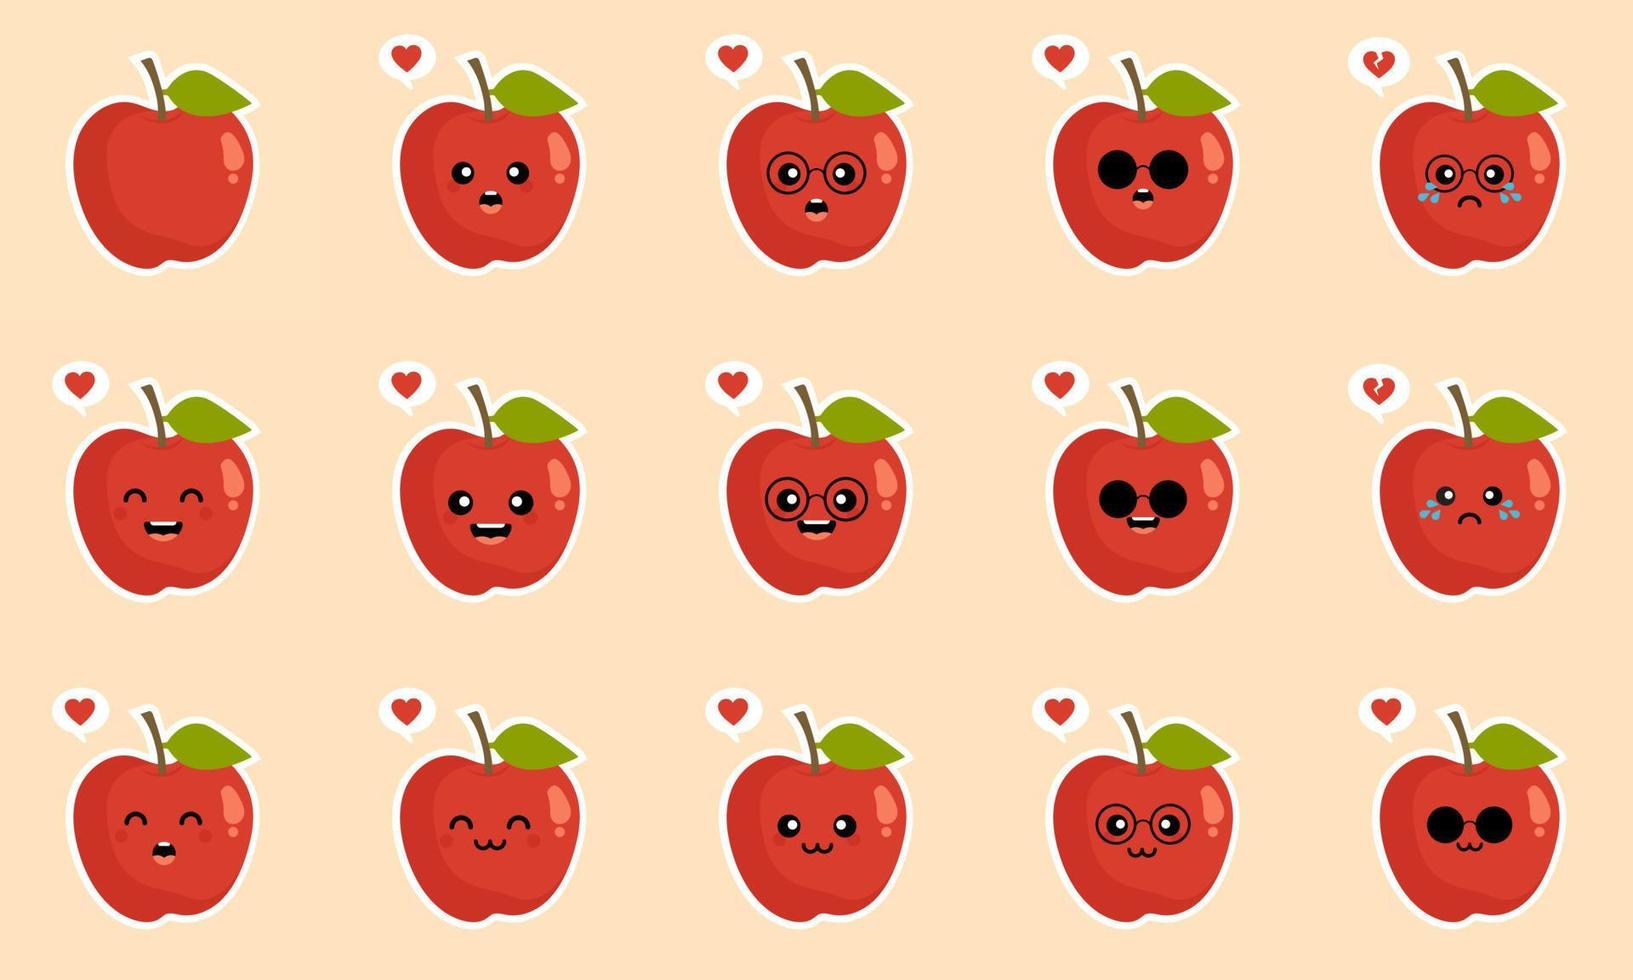 Pomme. concept d'aliments sains. collection d'émoticônes emoji. personnages de dessins animés pour livre de coloriage pour enfants, pages à colorier, impression de t-shirt, icône, logo, étiquette, patch, autocollant. pommes, un design moderne de pomme rouge vecteur